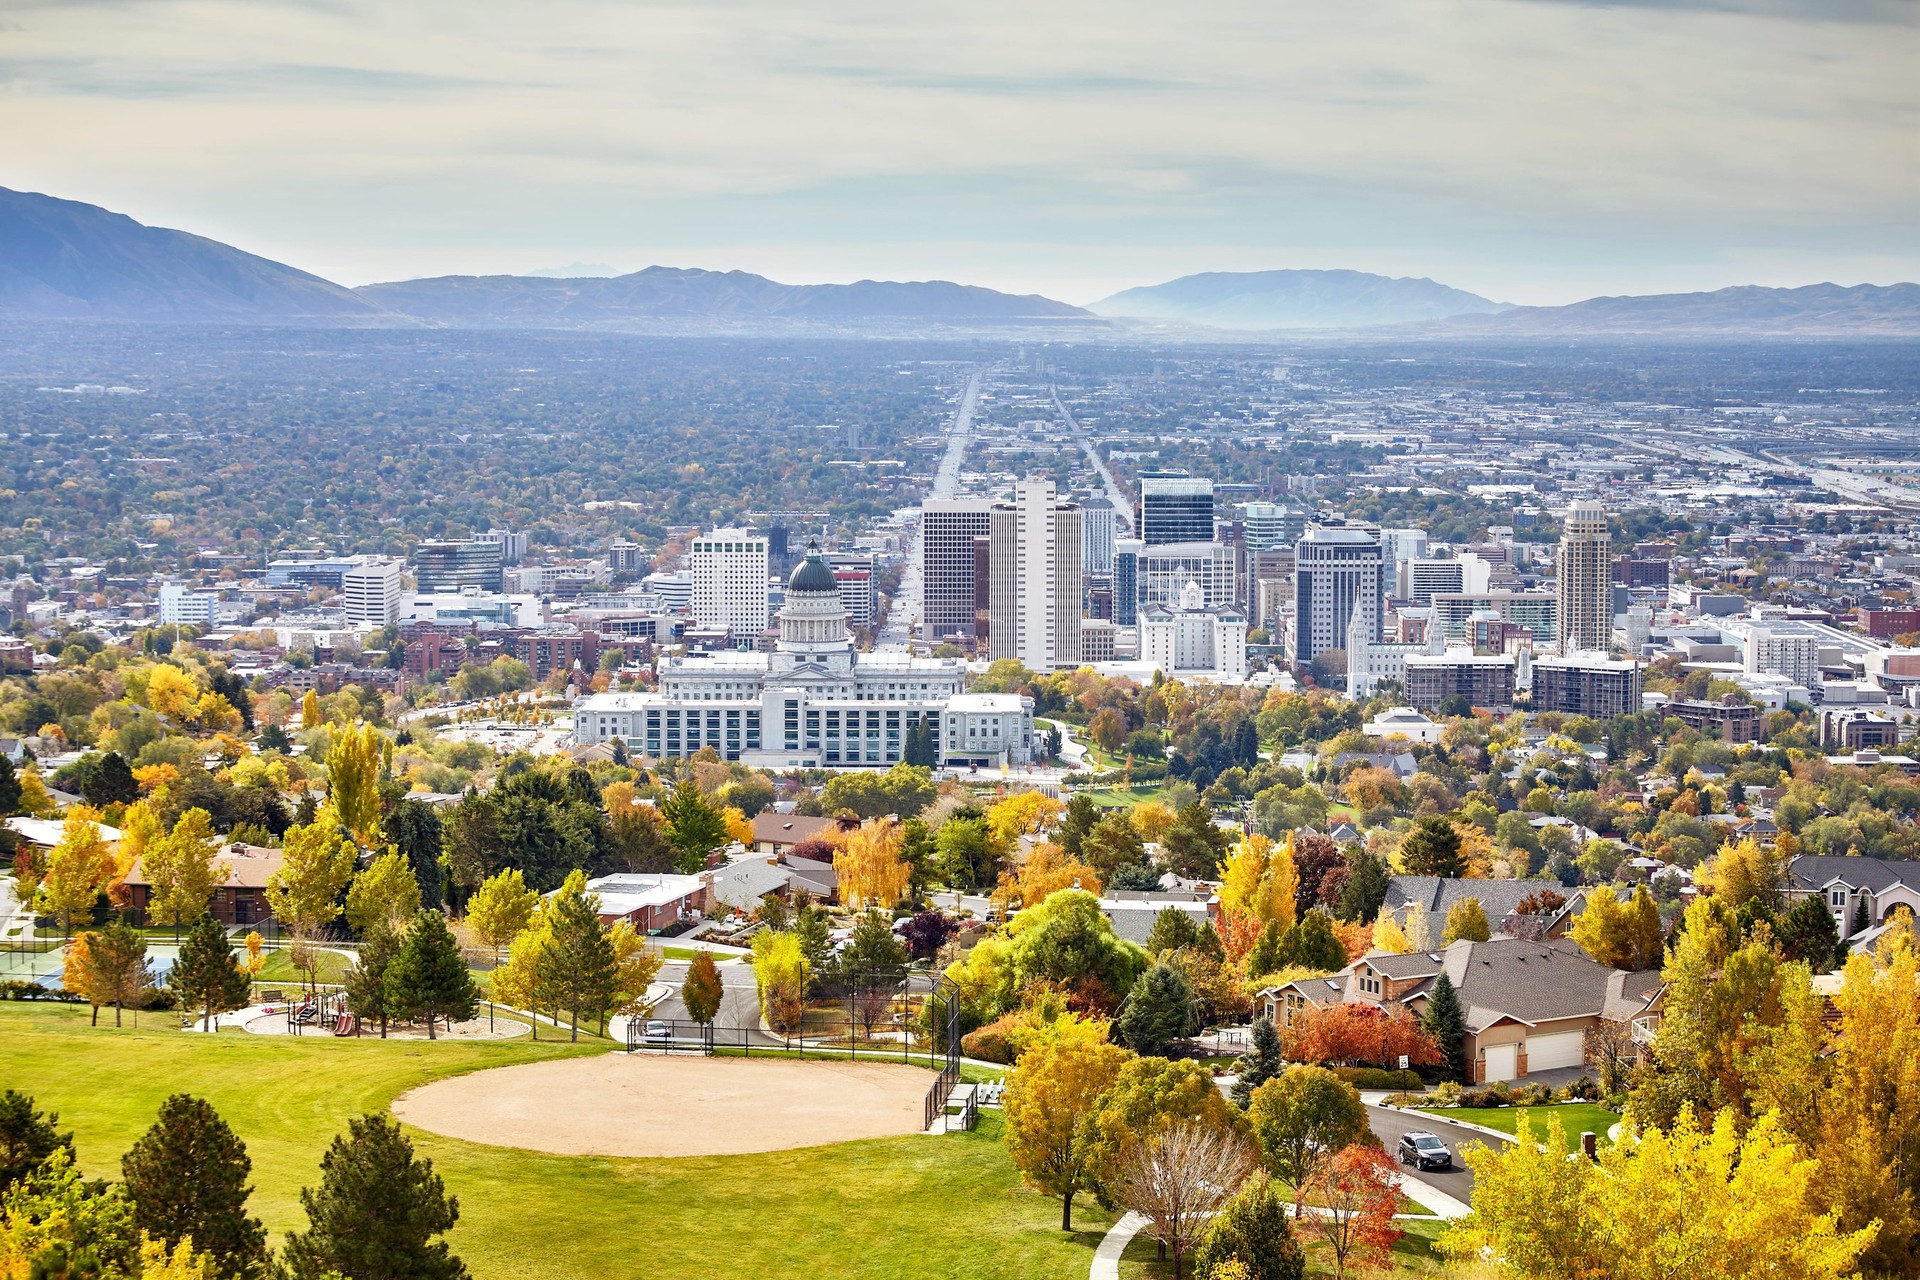 City view of the University of Utah in Salt Lake City